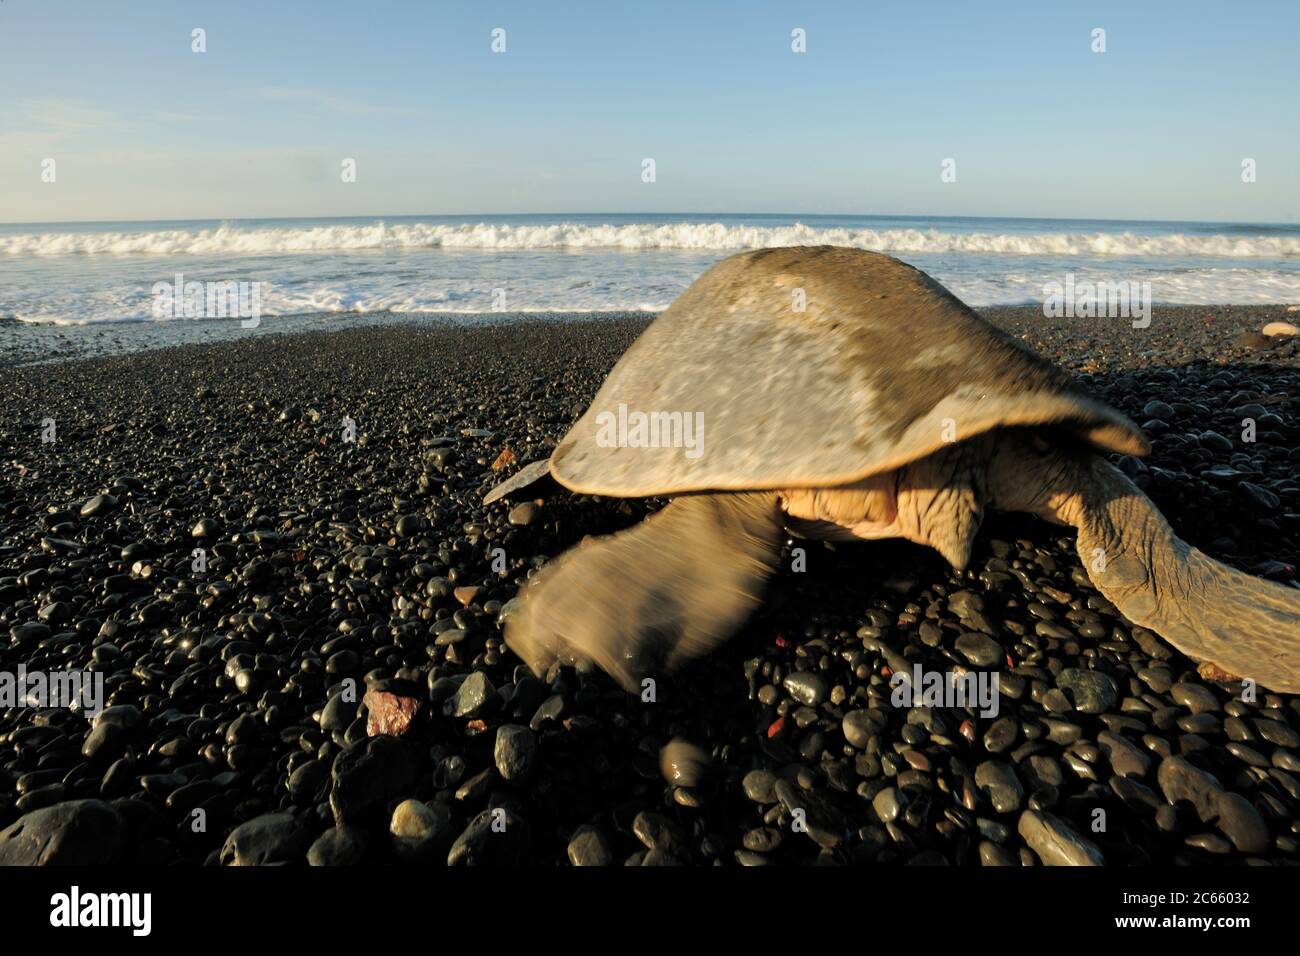 En regardant une tortue de mer mature comme cette olive ridley (Lepidochelys olivacea) on peut facilement dire le sexe: Une femelle a une queue courte, comme on l'a vu ici, alors qu'un mâle a une queue longue et musclée qui dépasse clairement le bord de la carapace. Banque D'Images